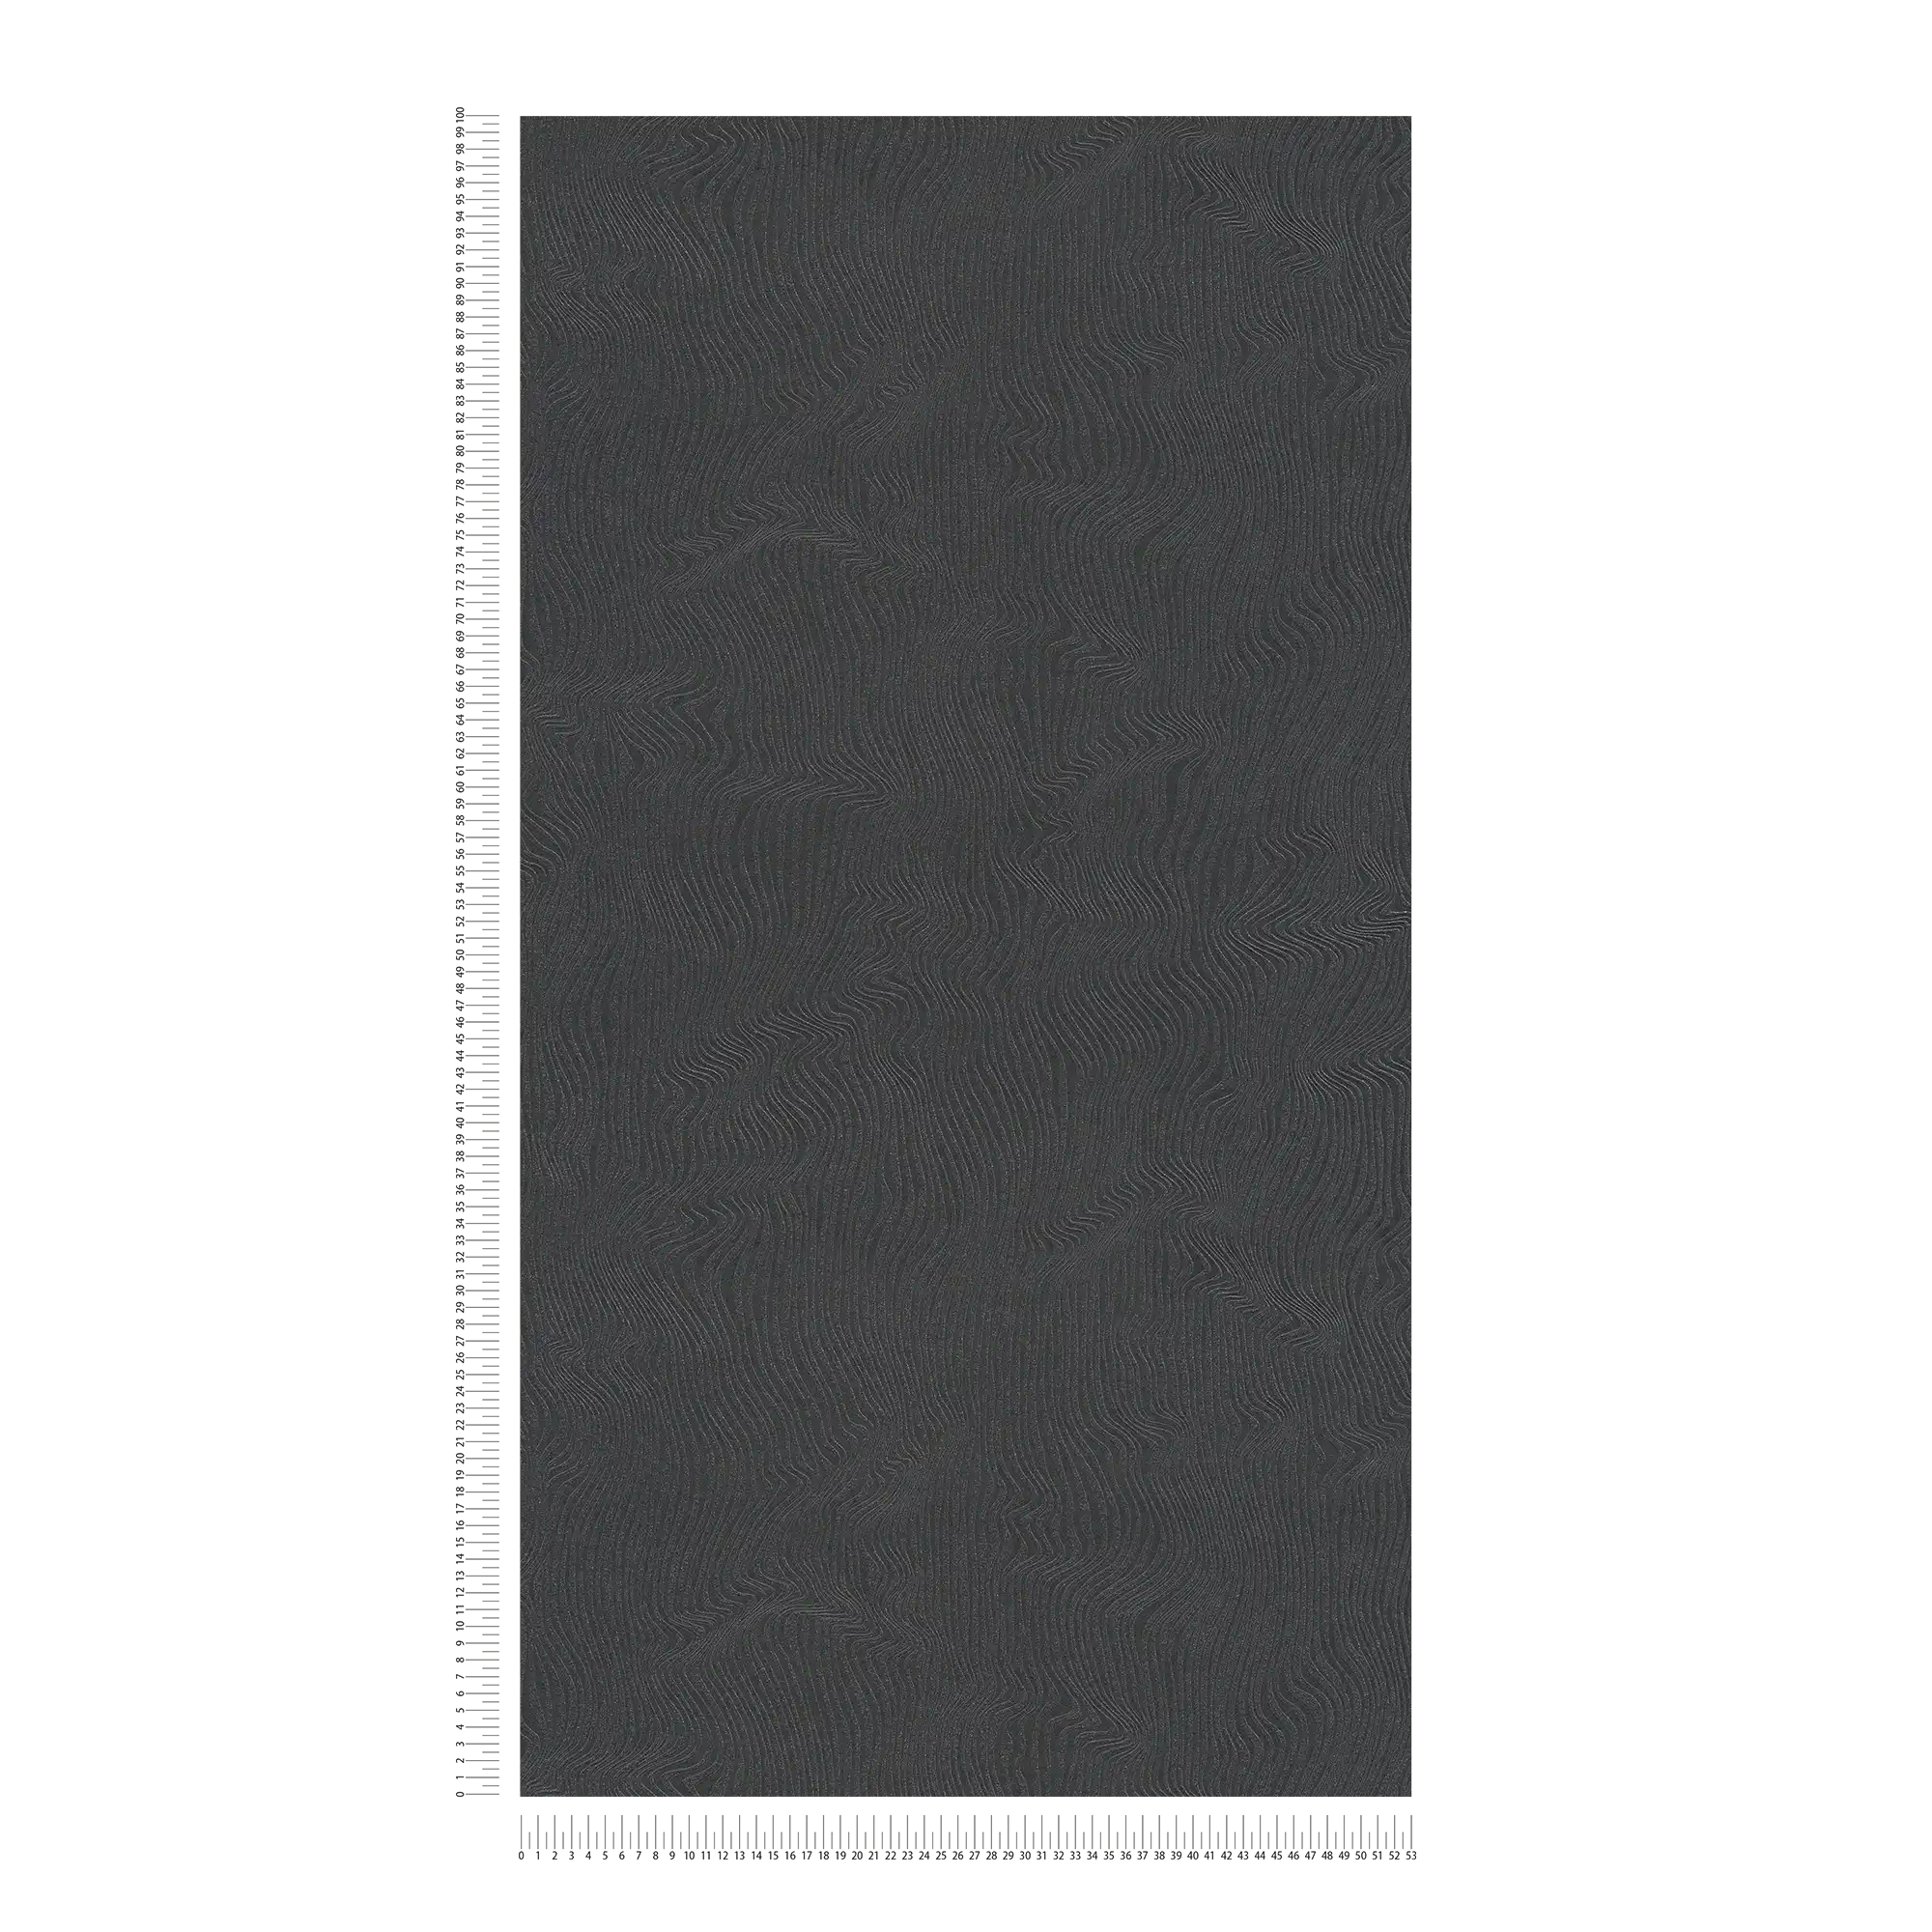             Effen behang met bewegend lijnenspel - zwart
        